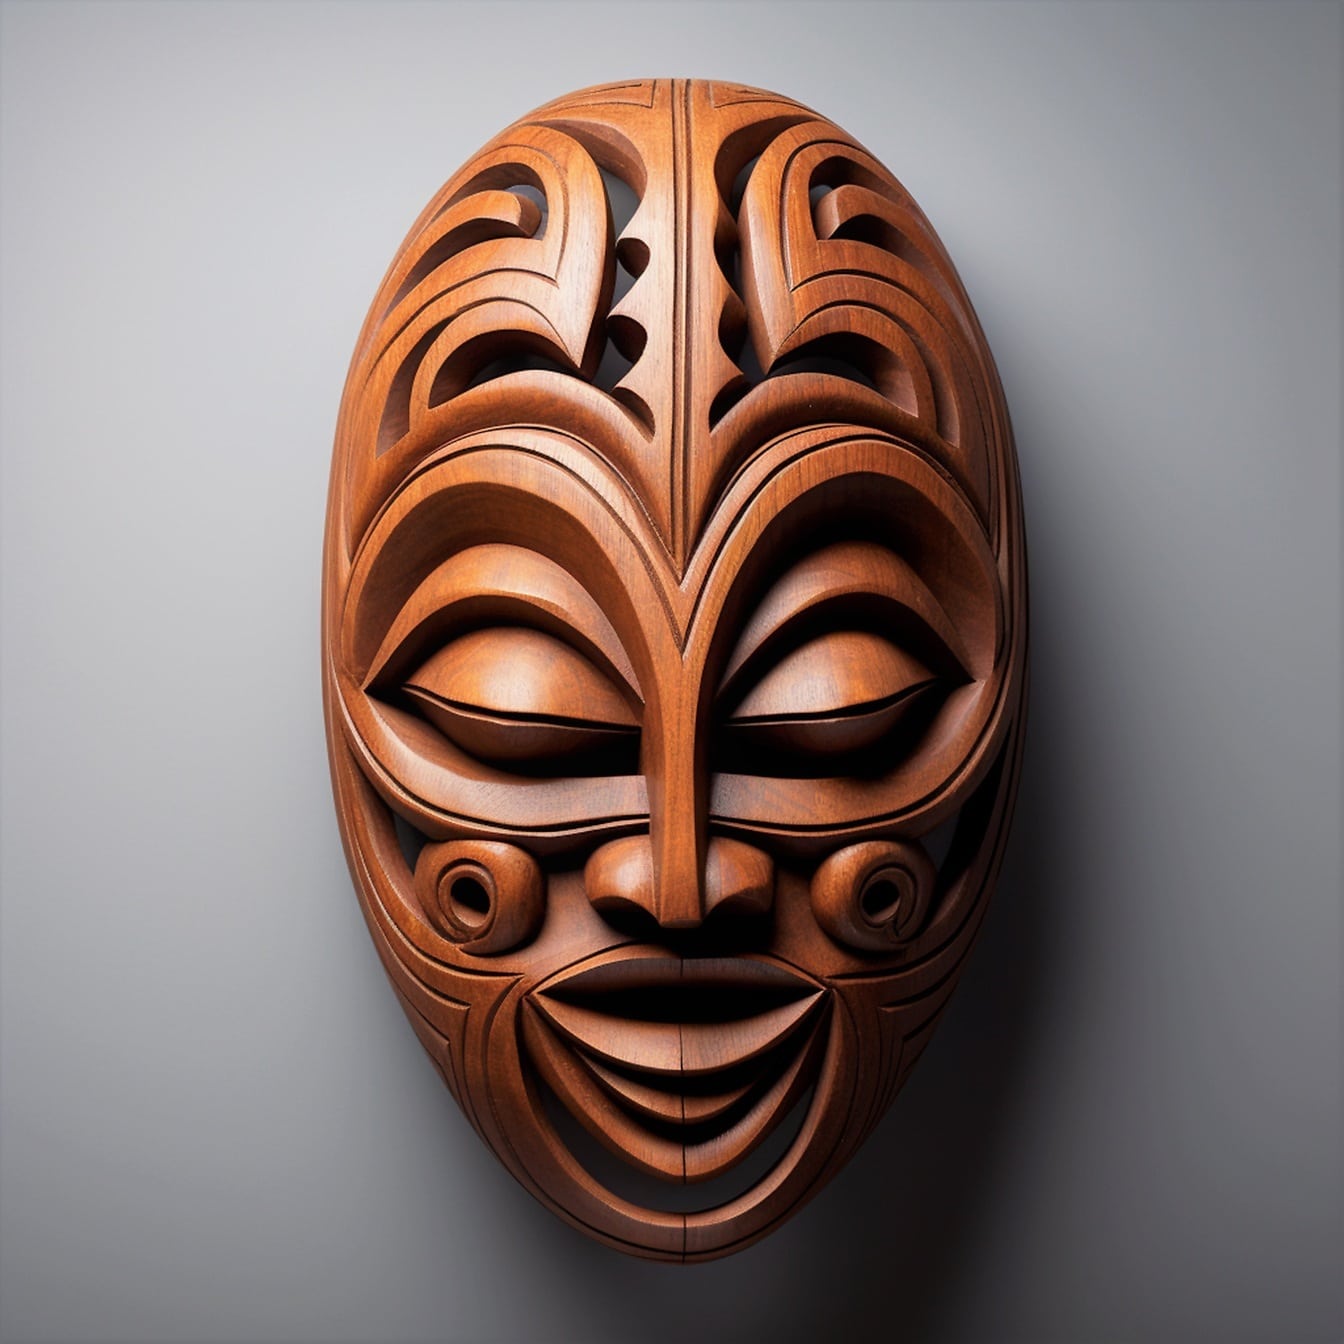 Máscara facial de madera divertida hecha a mano en primer plano